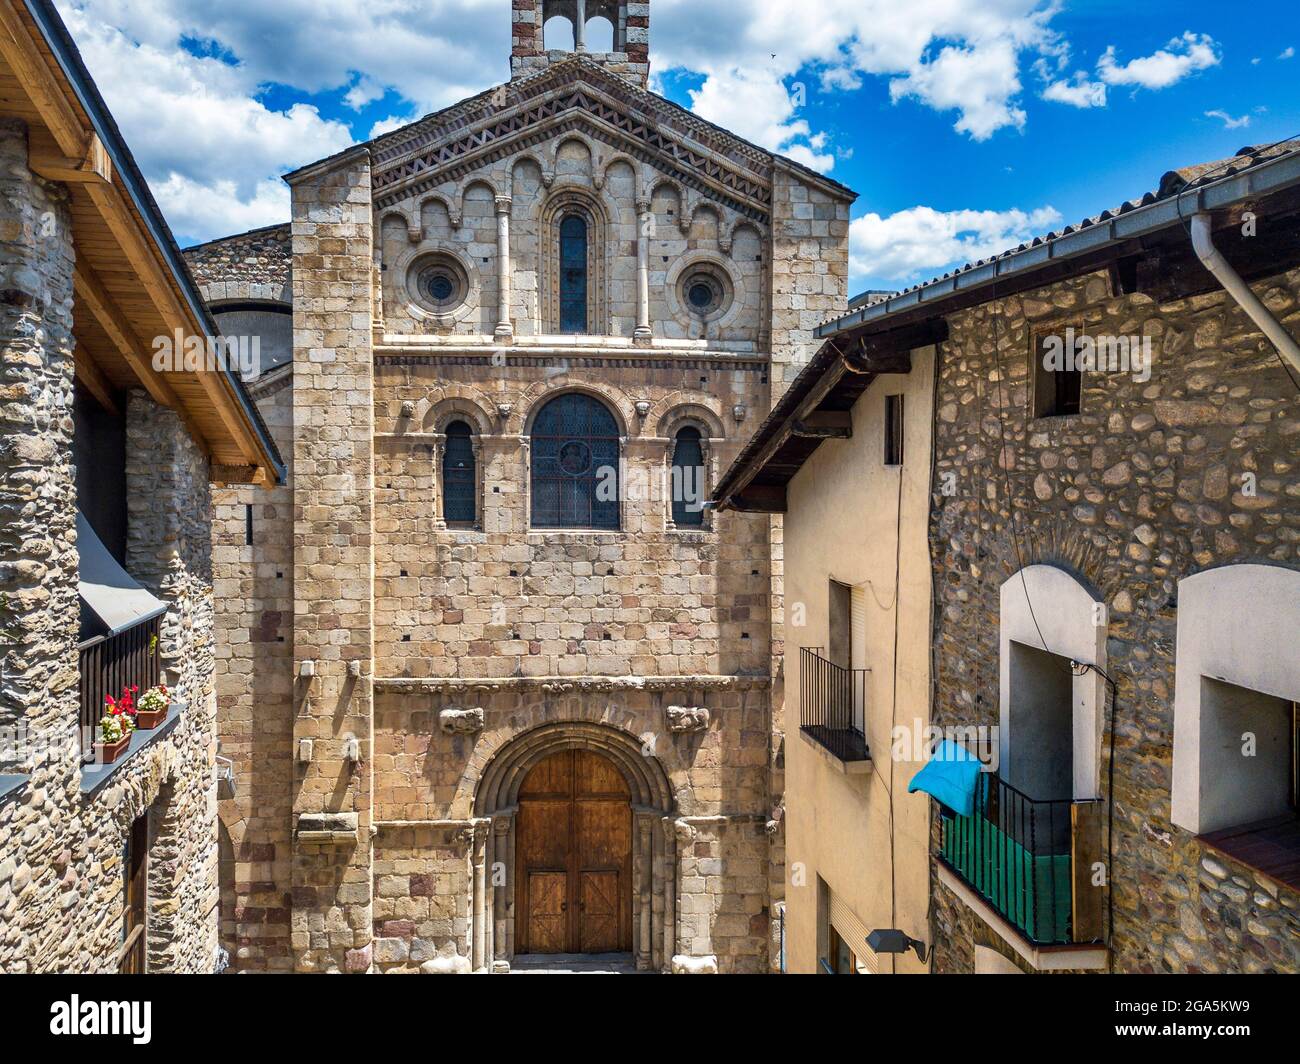 Vue aérienne de la façade de la cathédrale romane de Santa Maria à la Seu d'Urgell, Lleida, Catalogne, Espagne. La cathédrale de Santa Maria d'Urg Banque D'Images